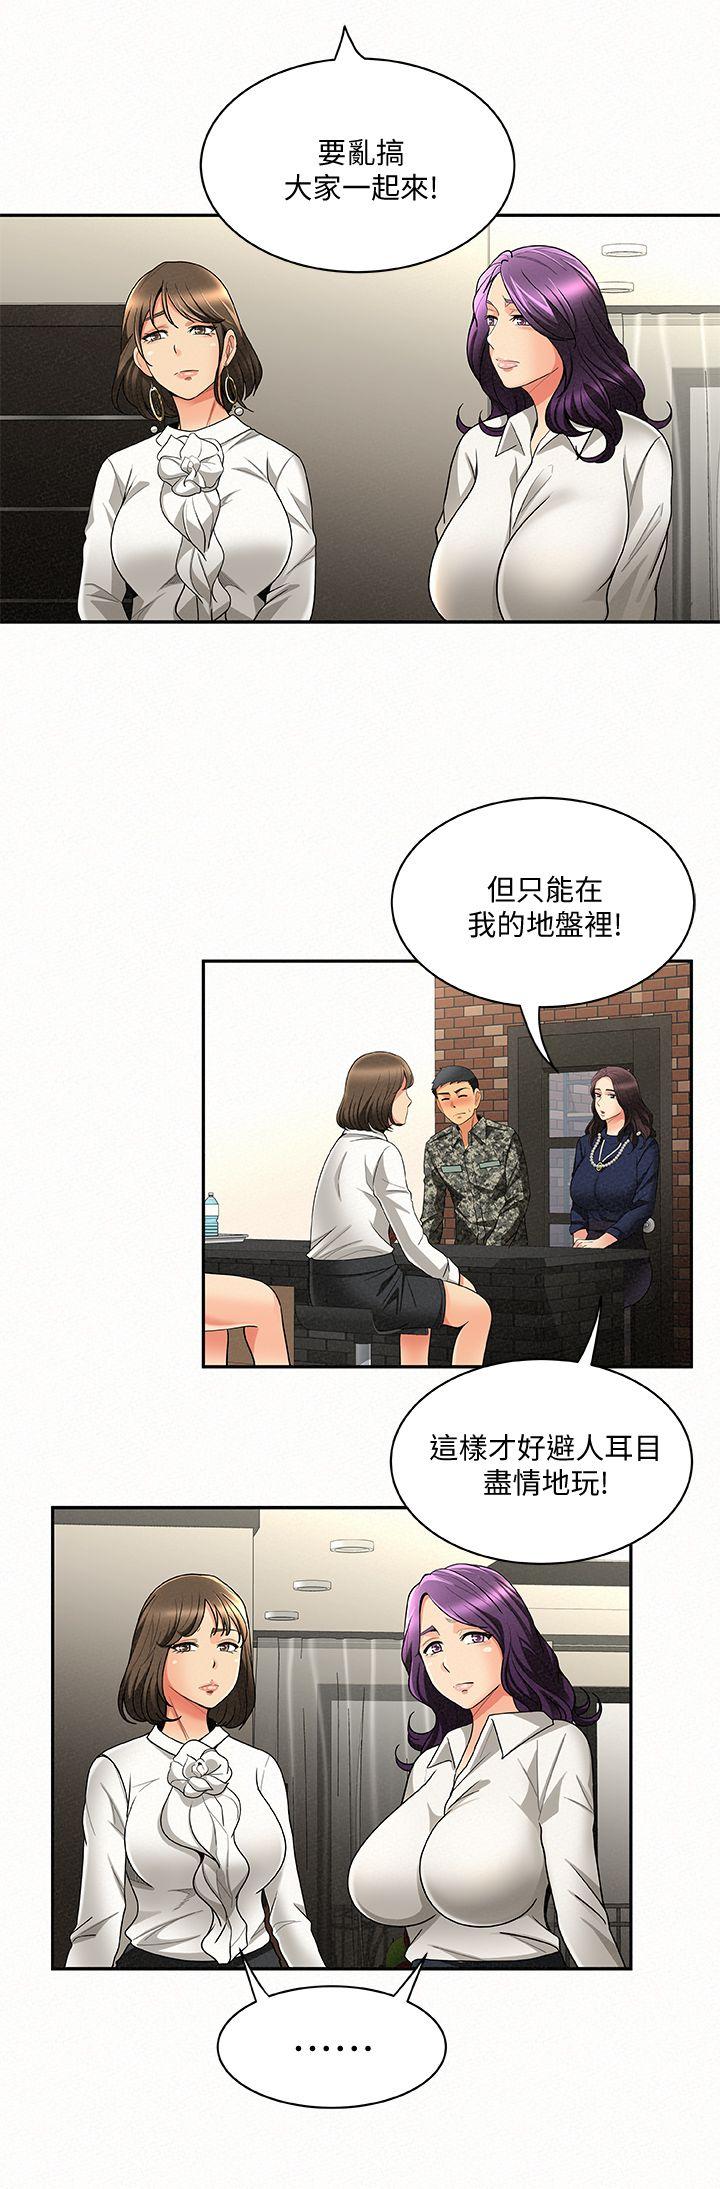 韩国污漫画 報告夫人 第3话-想不想嚐嚐其他有夫之妇? 18